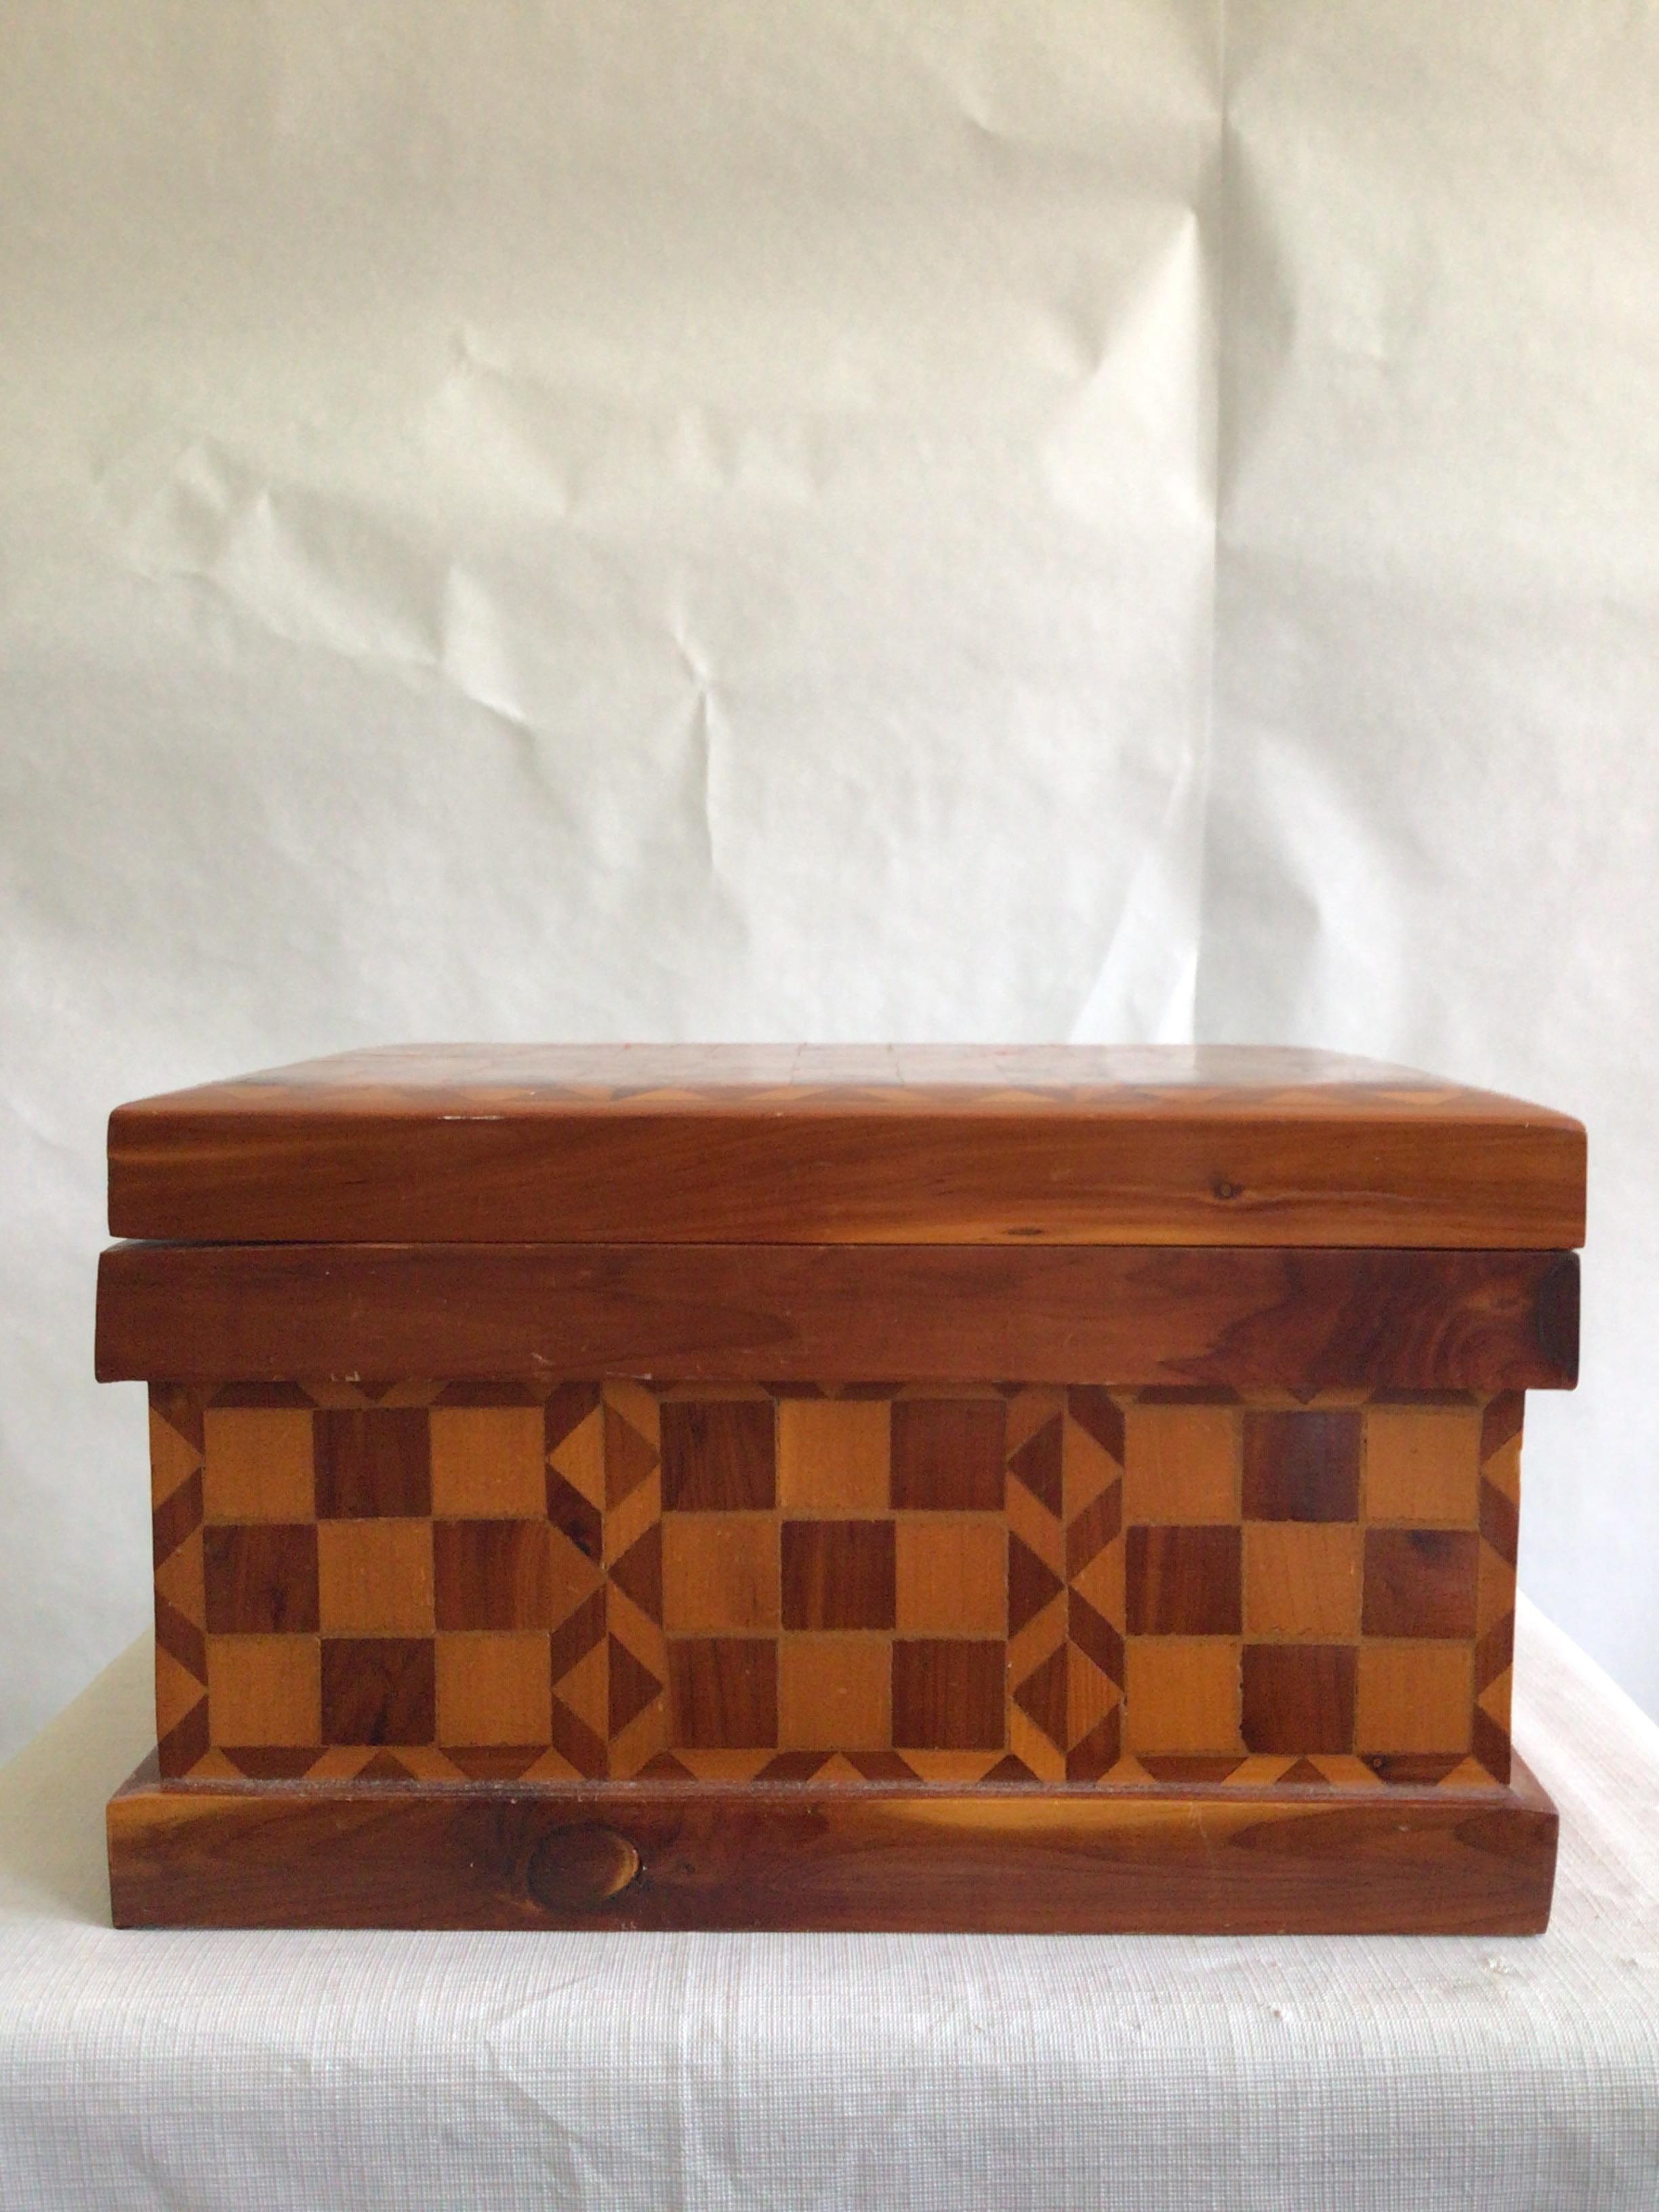 1940er Jahre Handmade Folk Art Checkered Inlayed Box
Karo-Inlay-Design auf allen Seiten
Innen mit Filz gefüttert
Einzigartige Scharniere